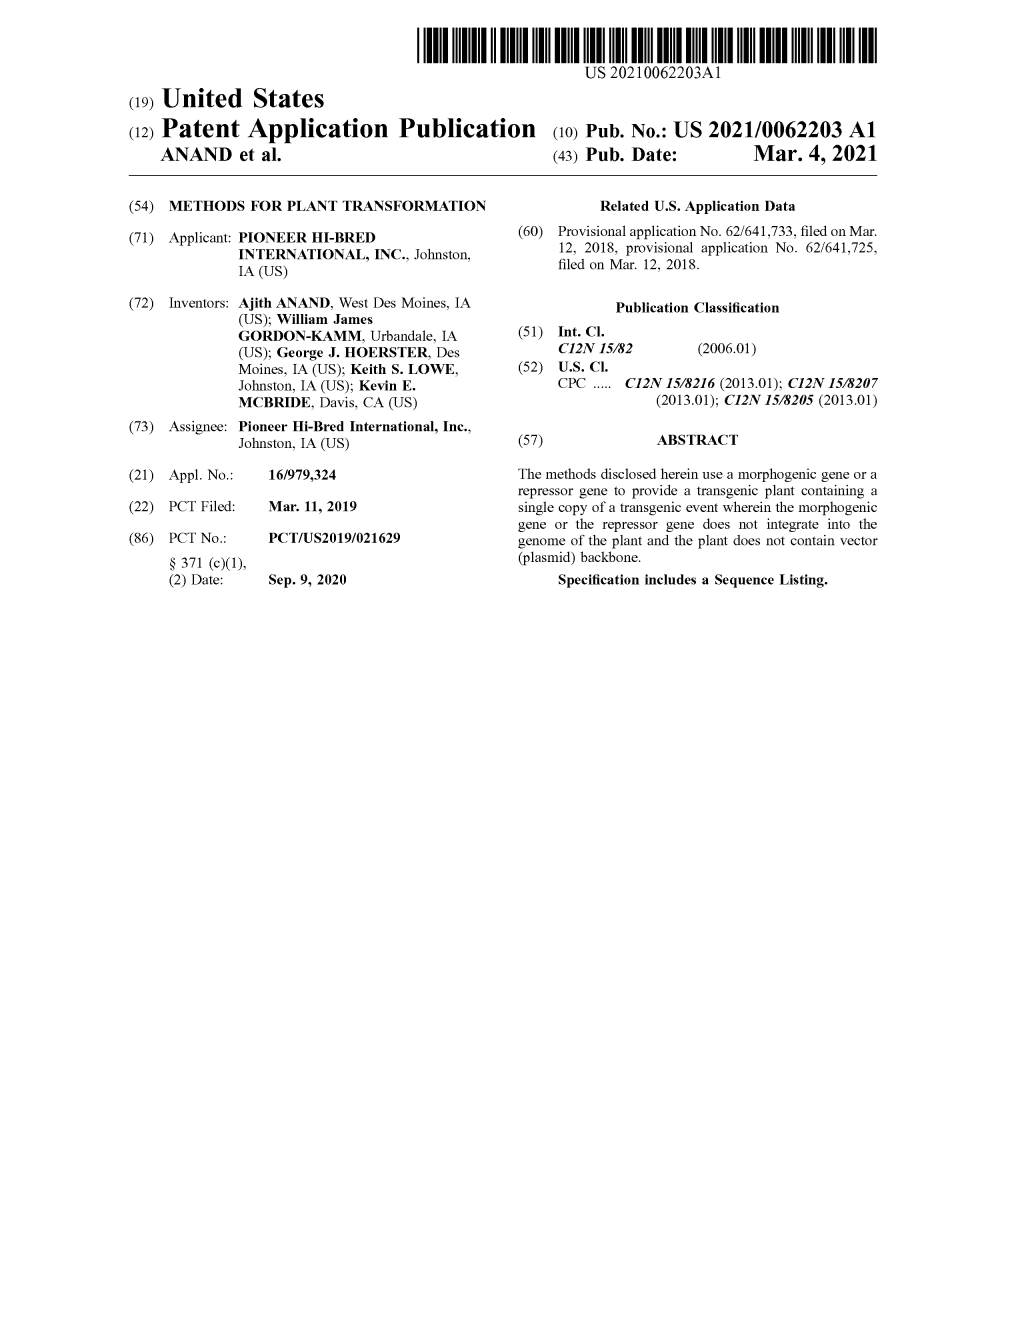 ( 12 ) Patent Application Publication ( 10 ) Pub . No .: US 2021/0062203 A1 ANAND Et Al